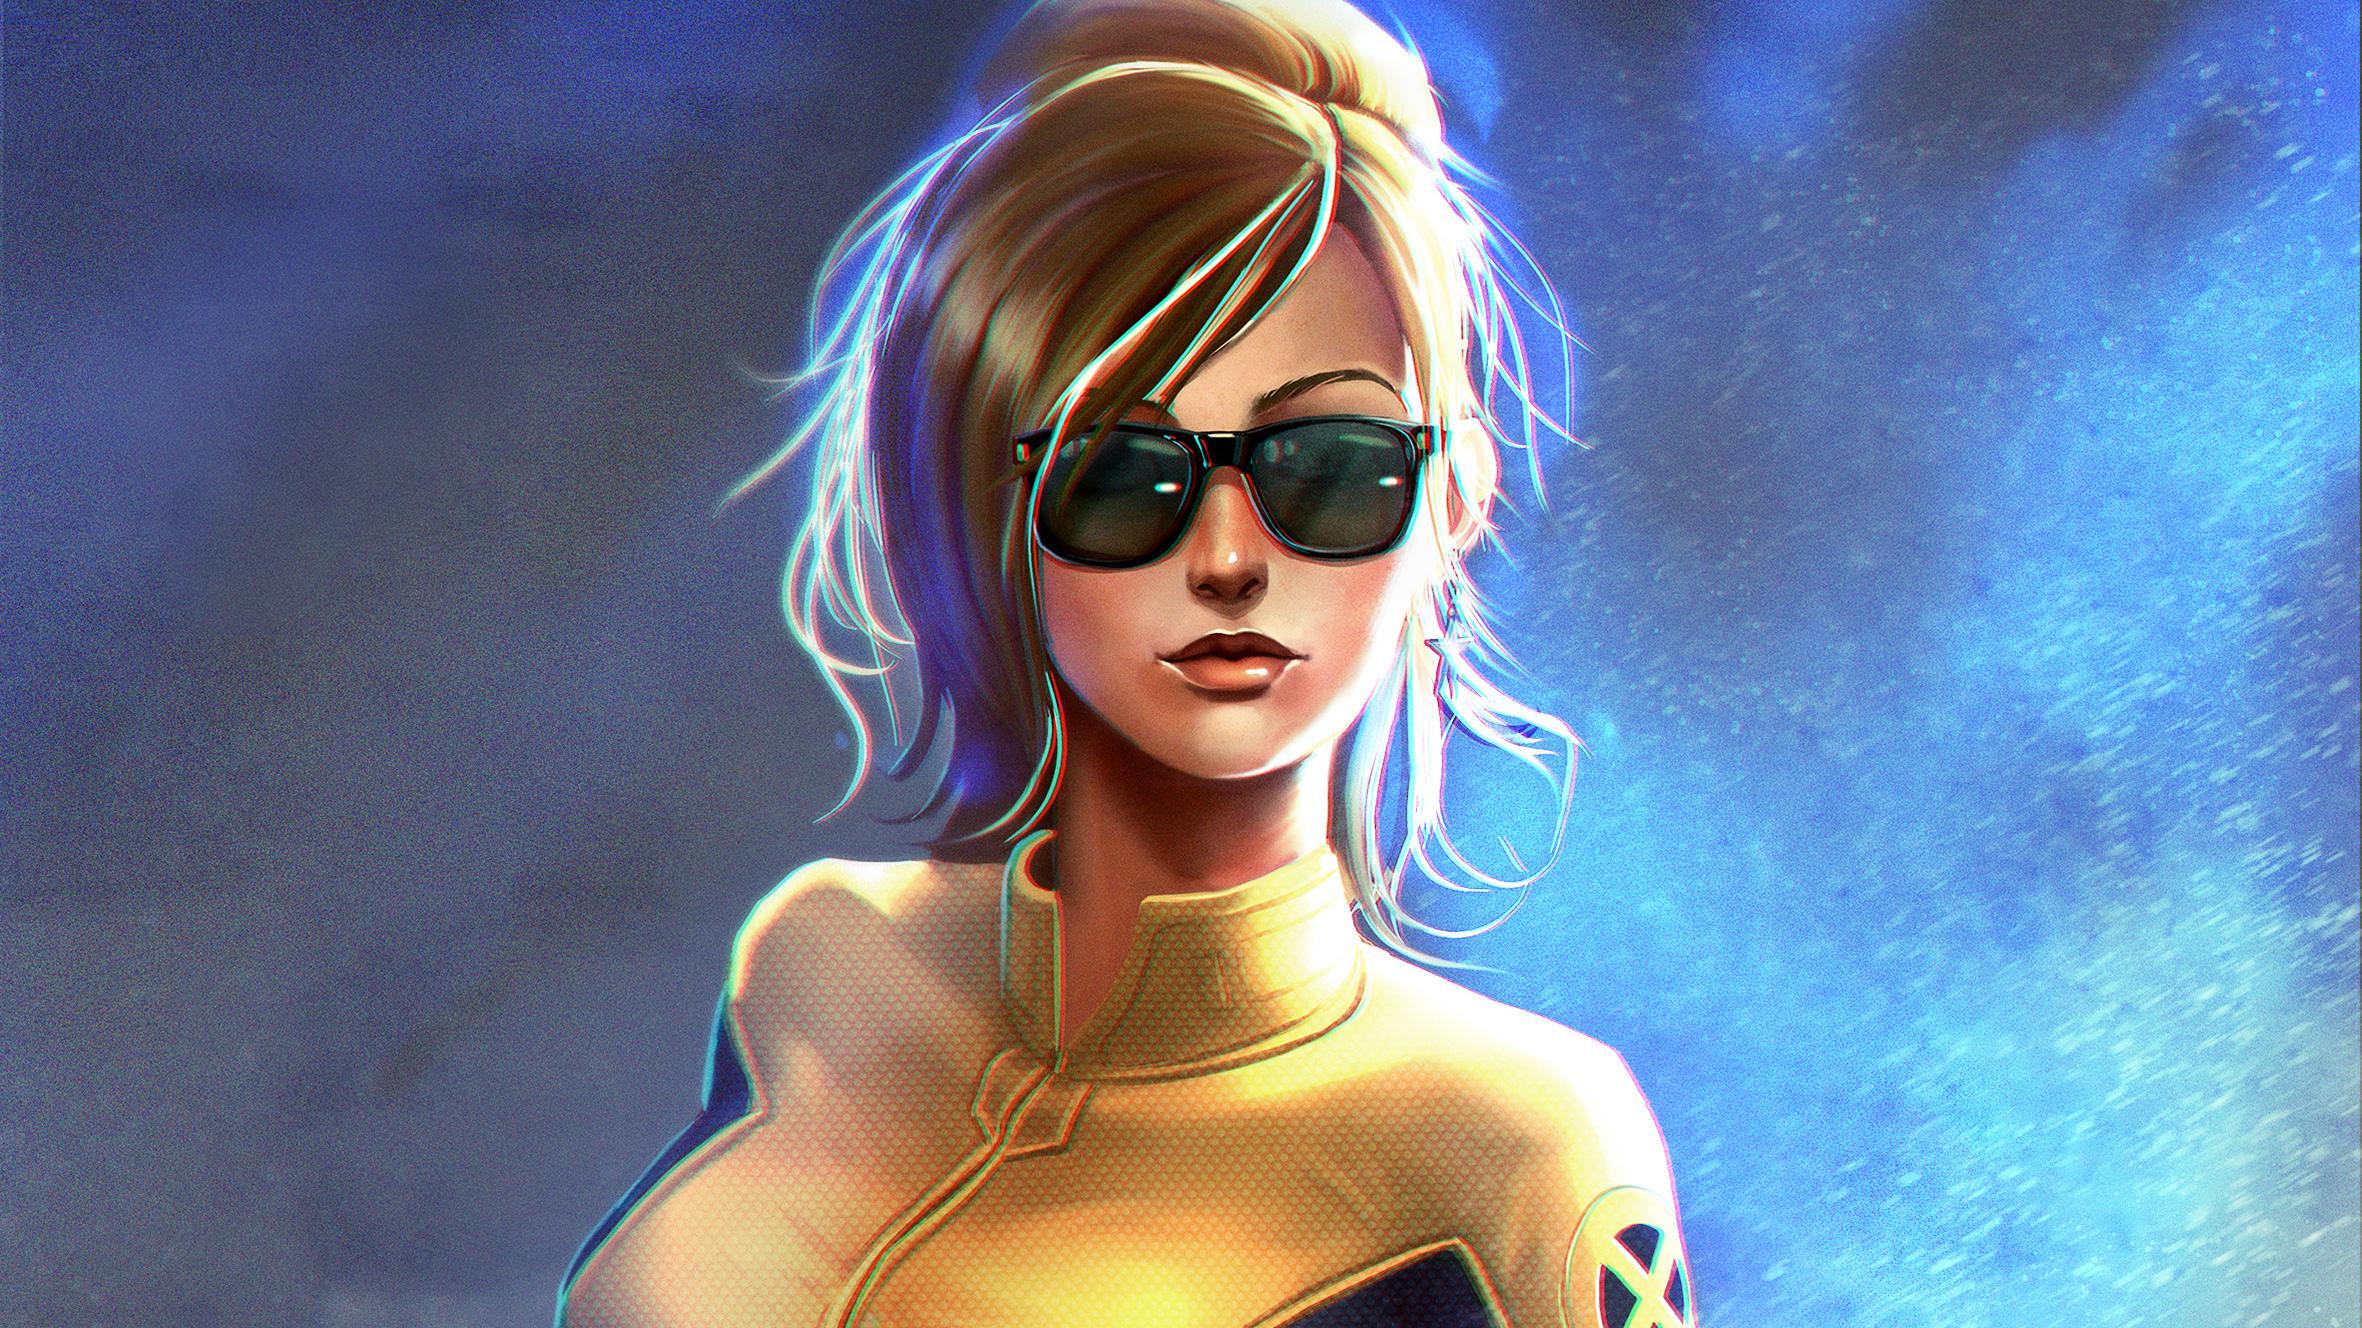 X Men Mutant Girl, HD Superheroes, 4k Wallpaper, Image